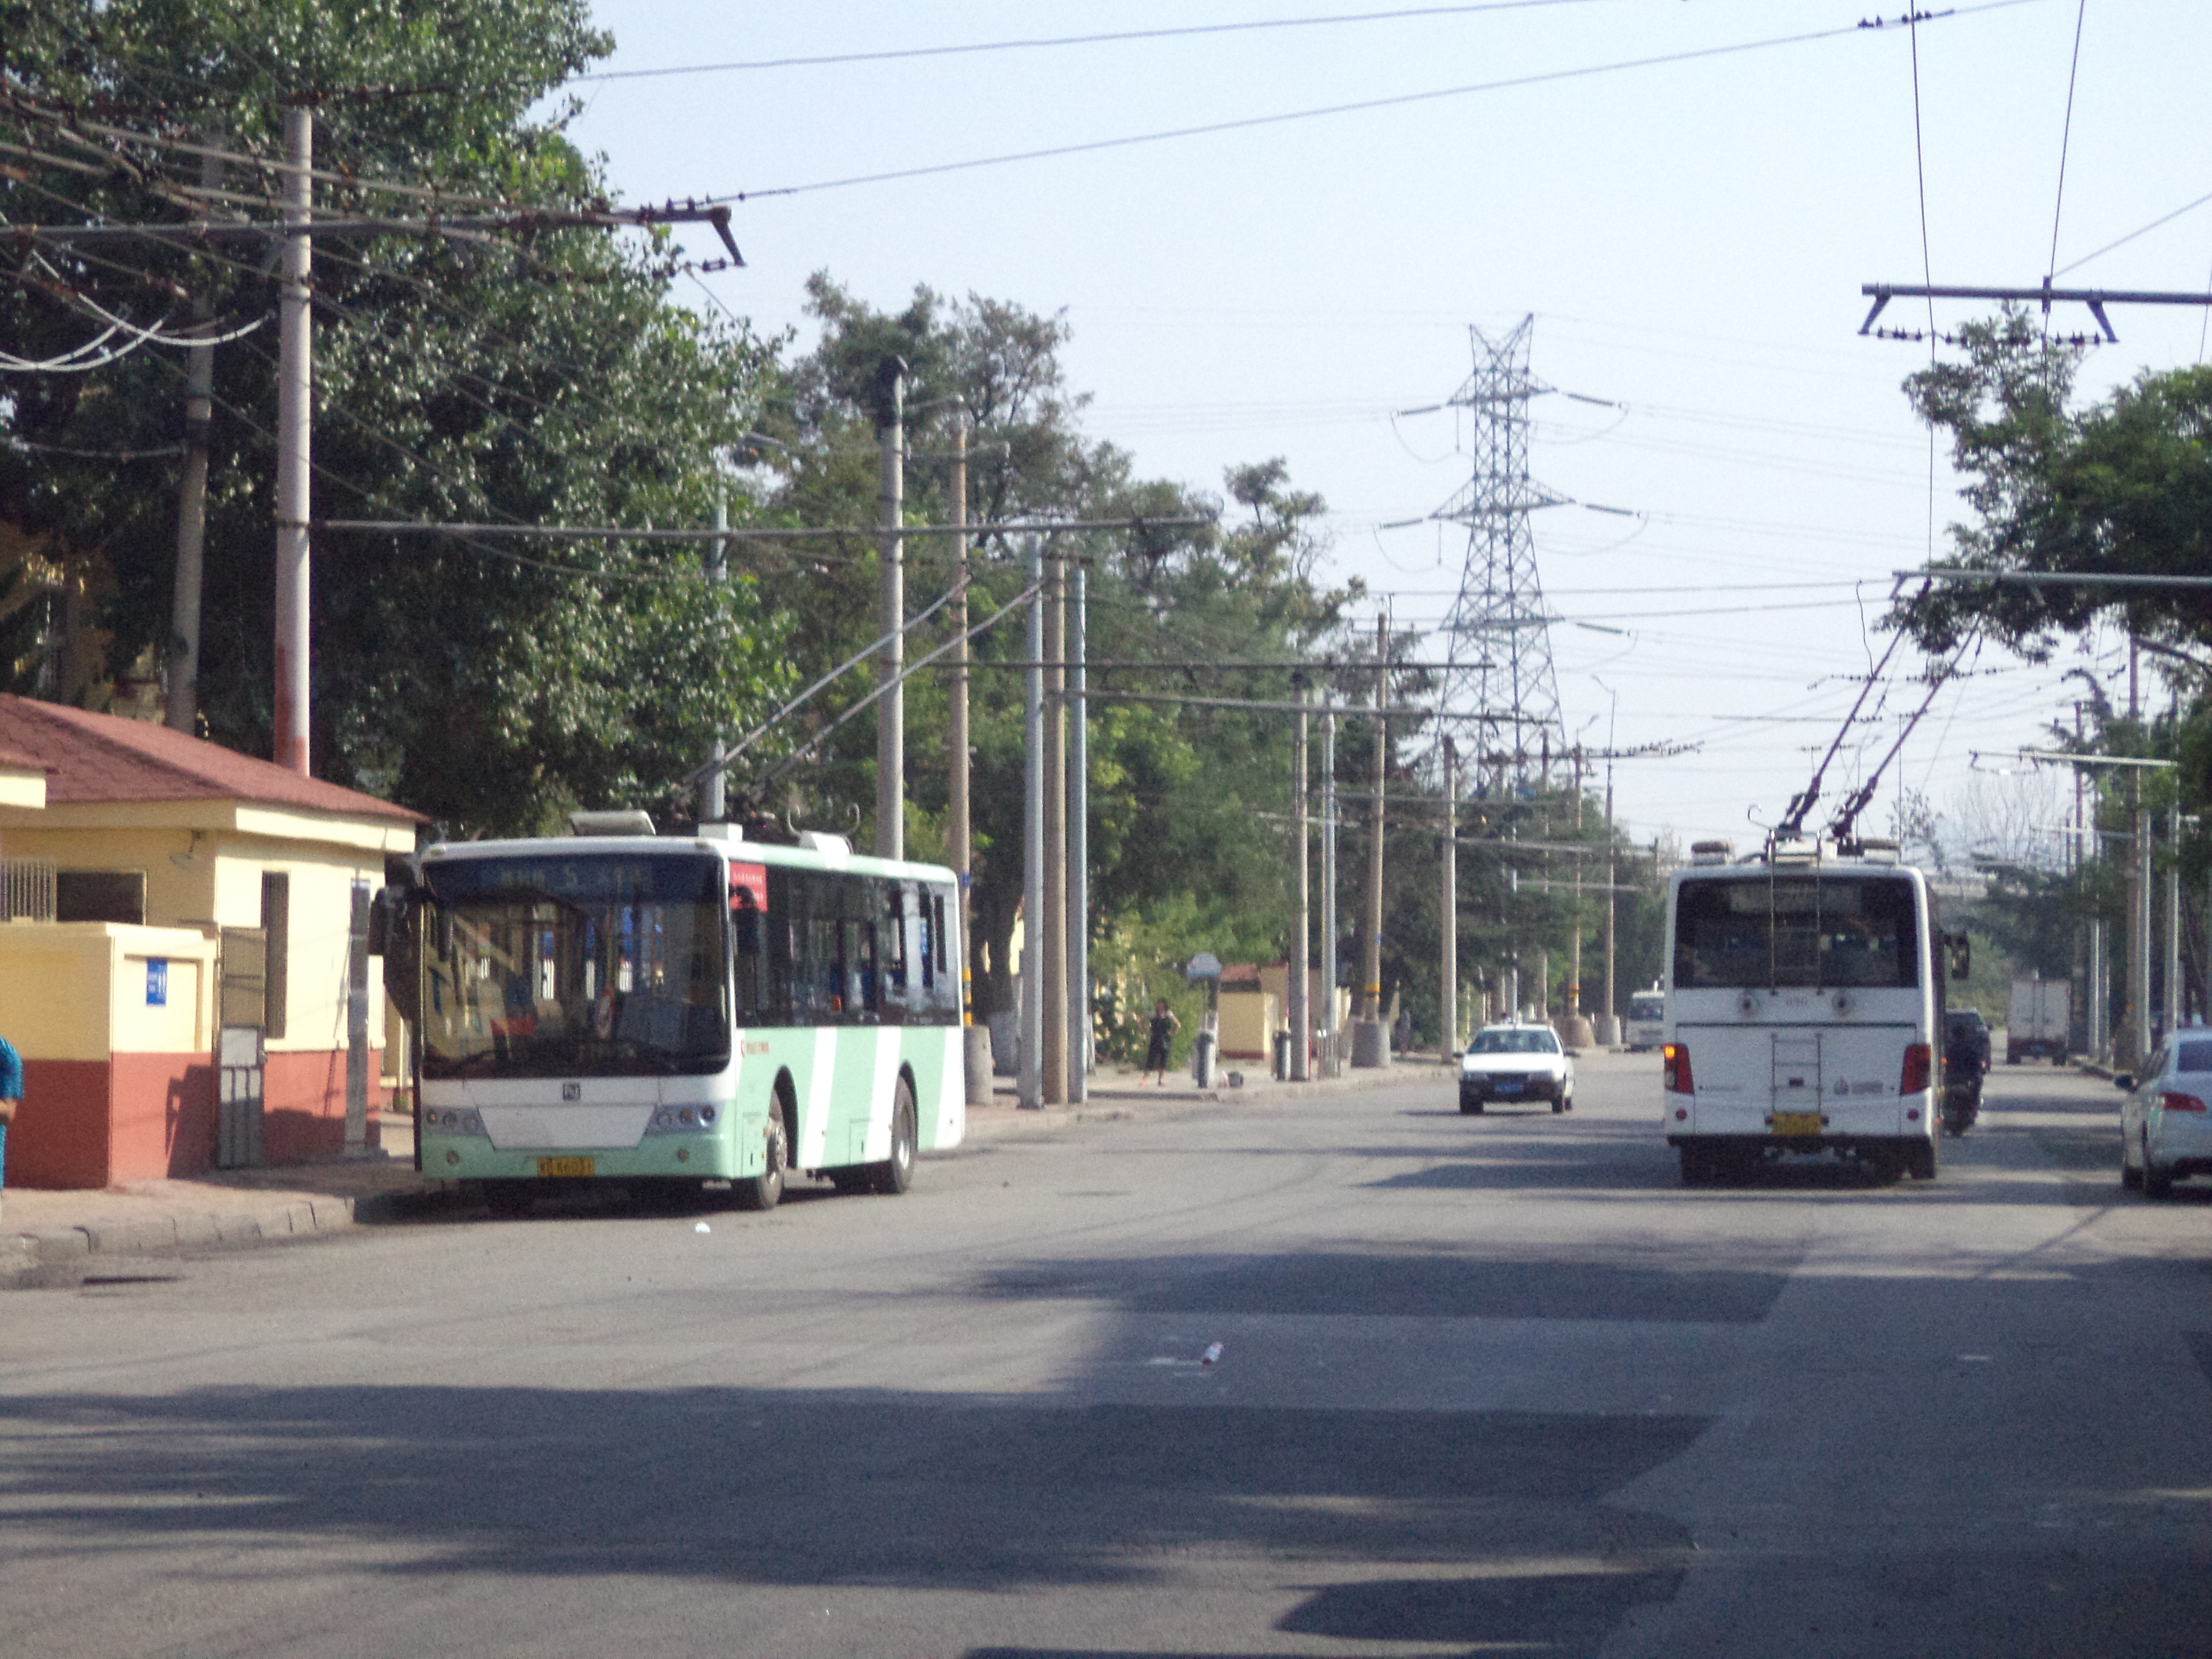 北京公交118路 BJD-WG120N2 二代电尼 无轨电车 在线运营_哔哩哔哩_bilibili